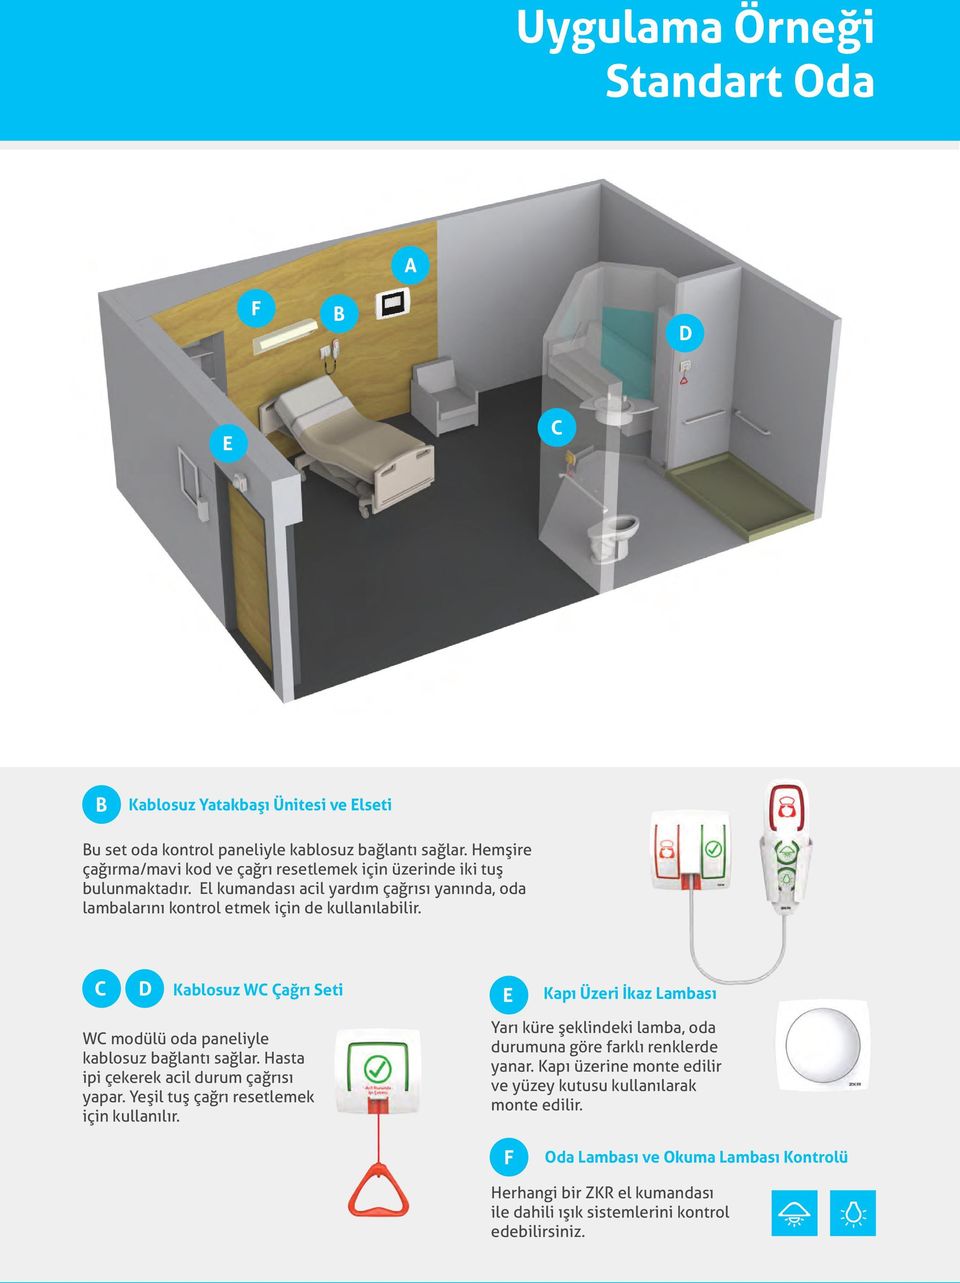 C D Kablosuz WC Çağrı Seti WC modülü oda paneliyle kablosuz bağlantı sağlar. Hasta ipi çekerek acil durum çağrısı yapar. Yeşil tuş çağrı resetlemek için kullanılır.